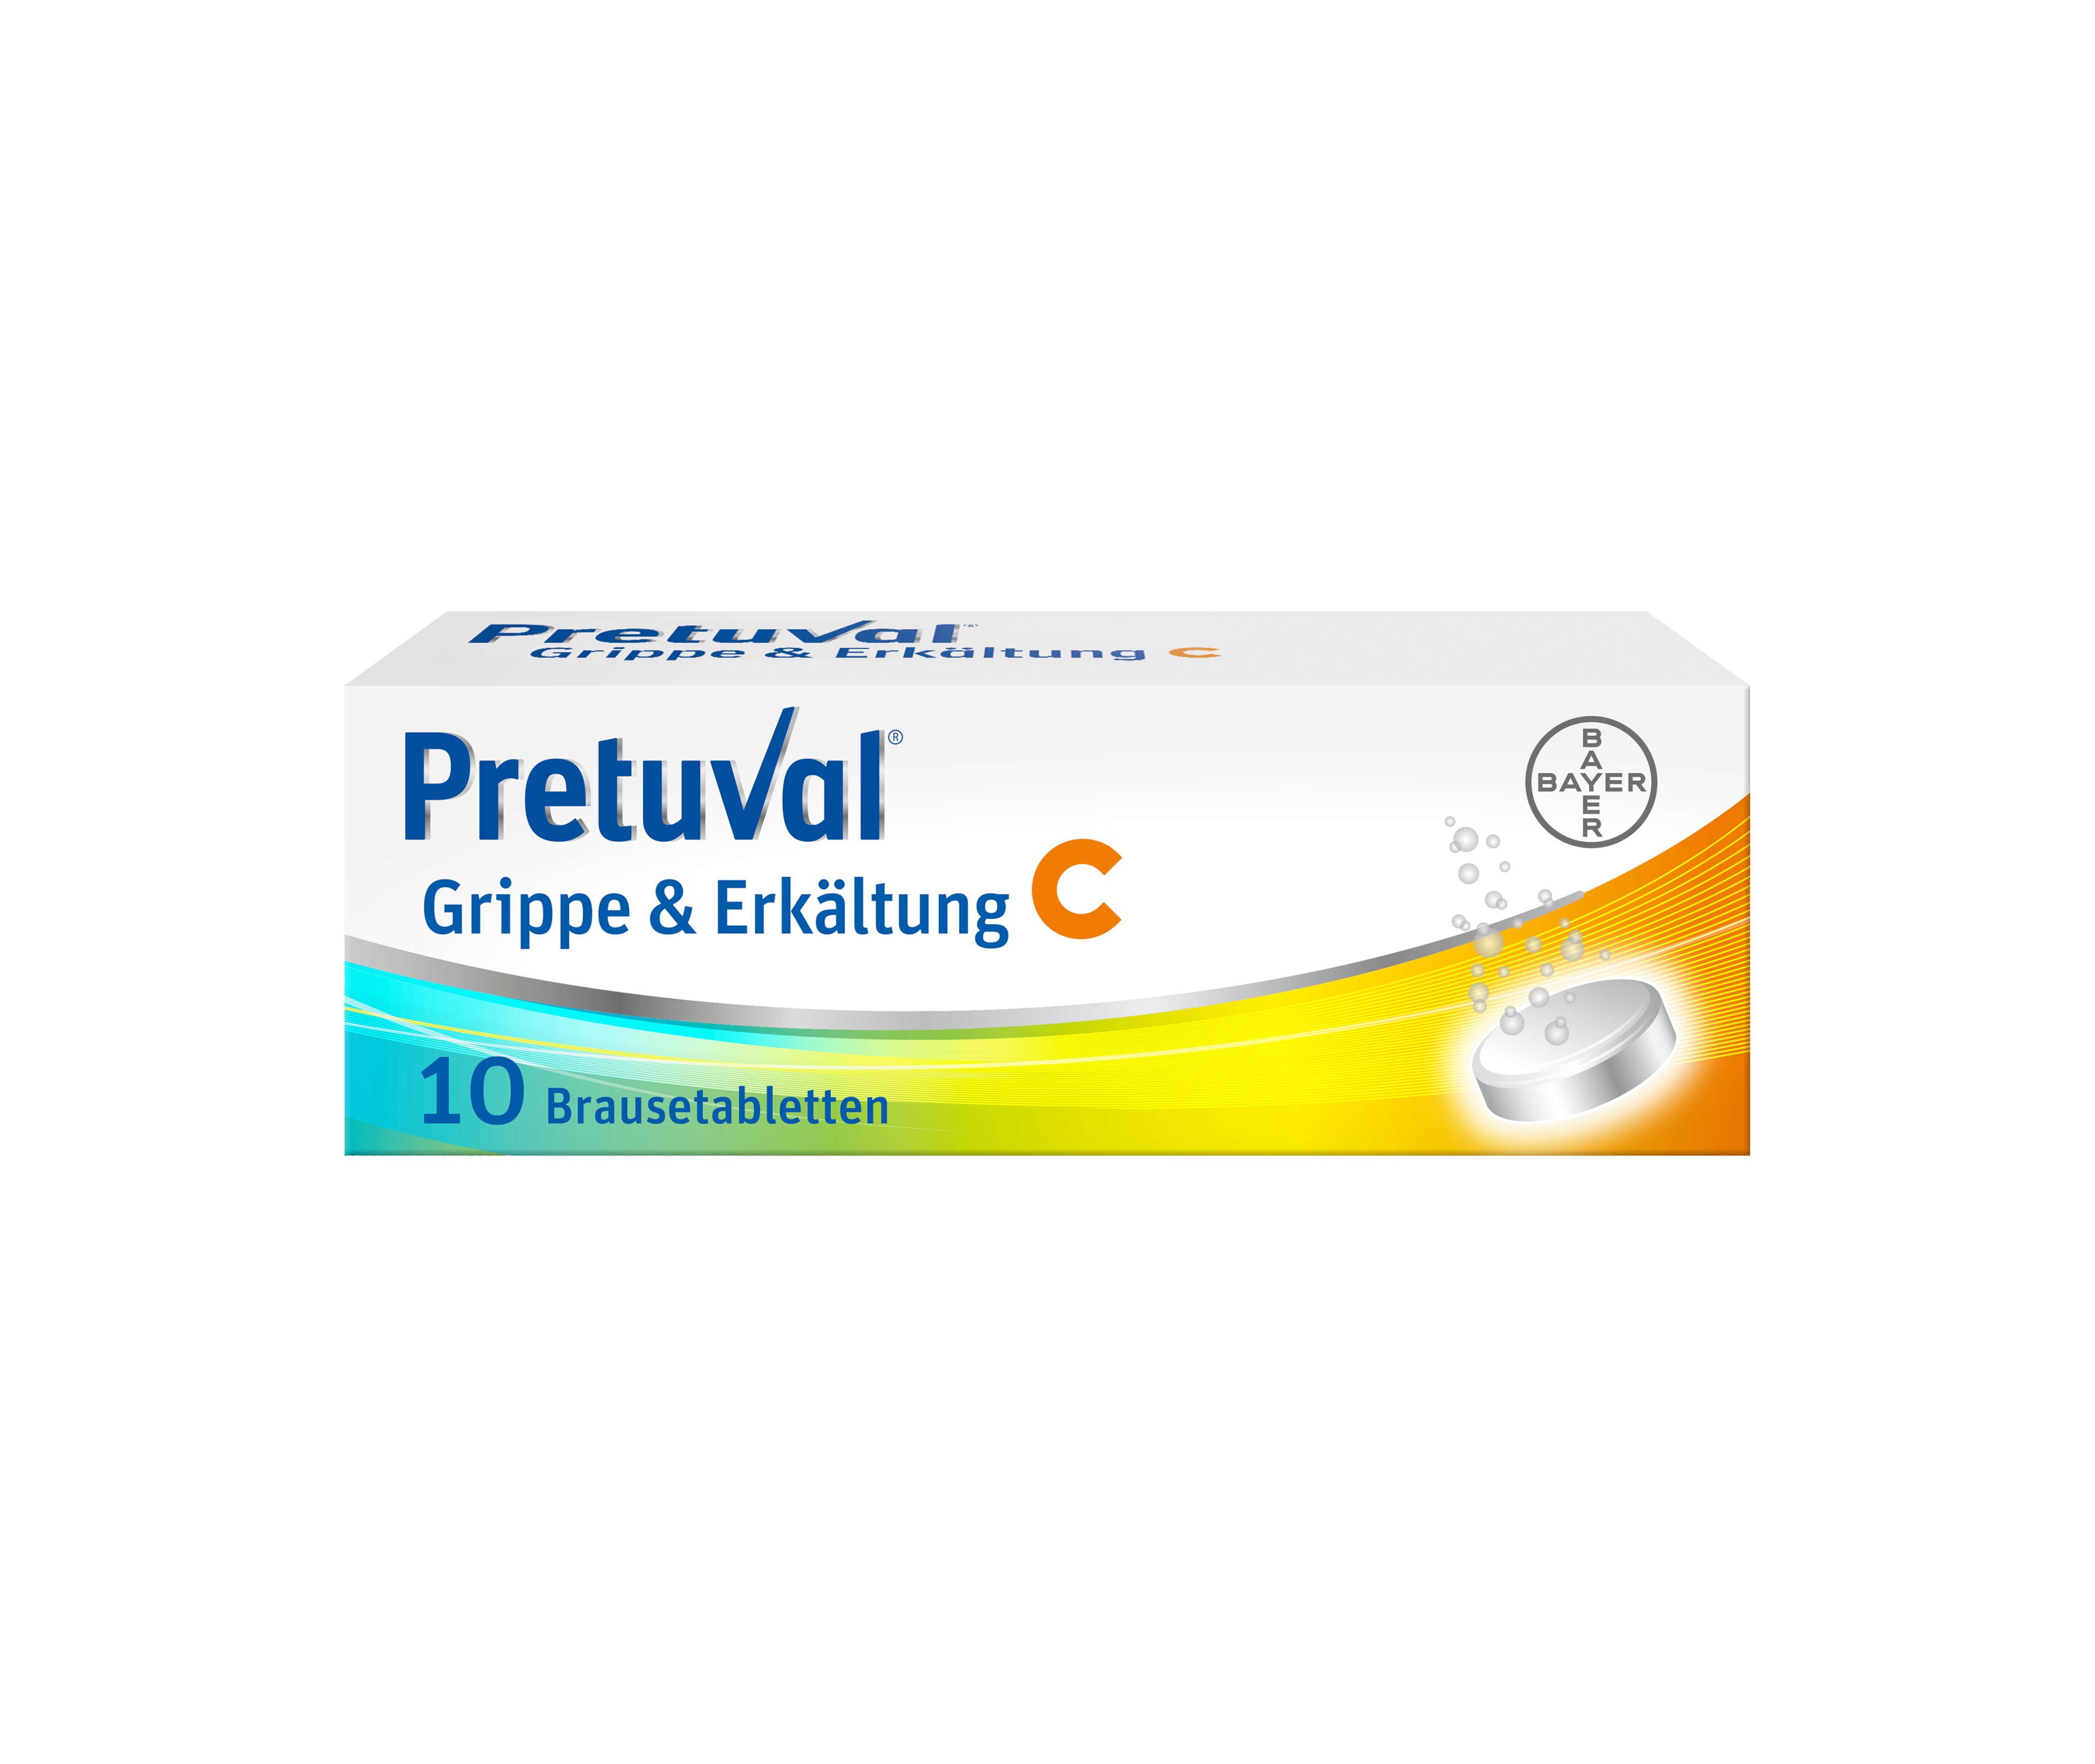 Pretuval® Grippe & Erkältung C – 10 Brausetabletten